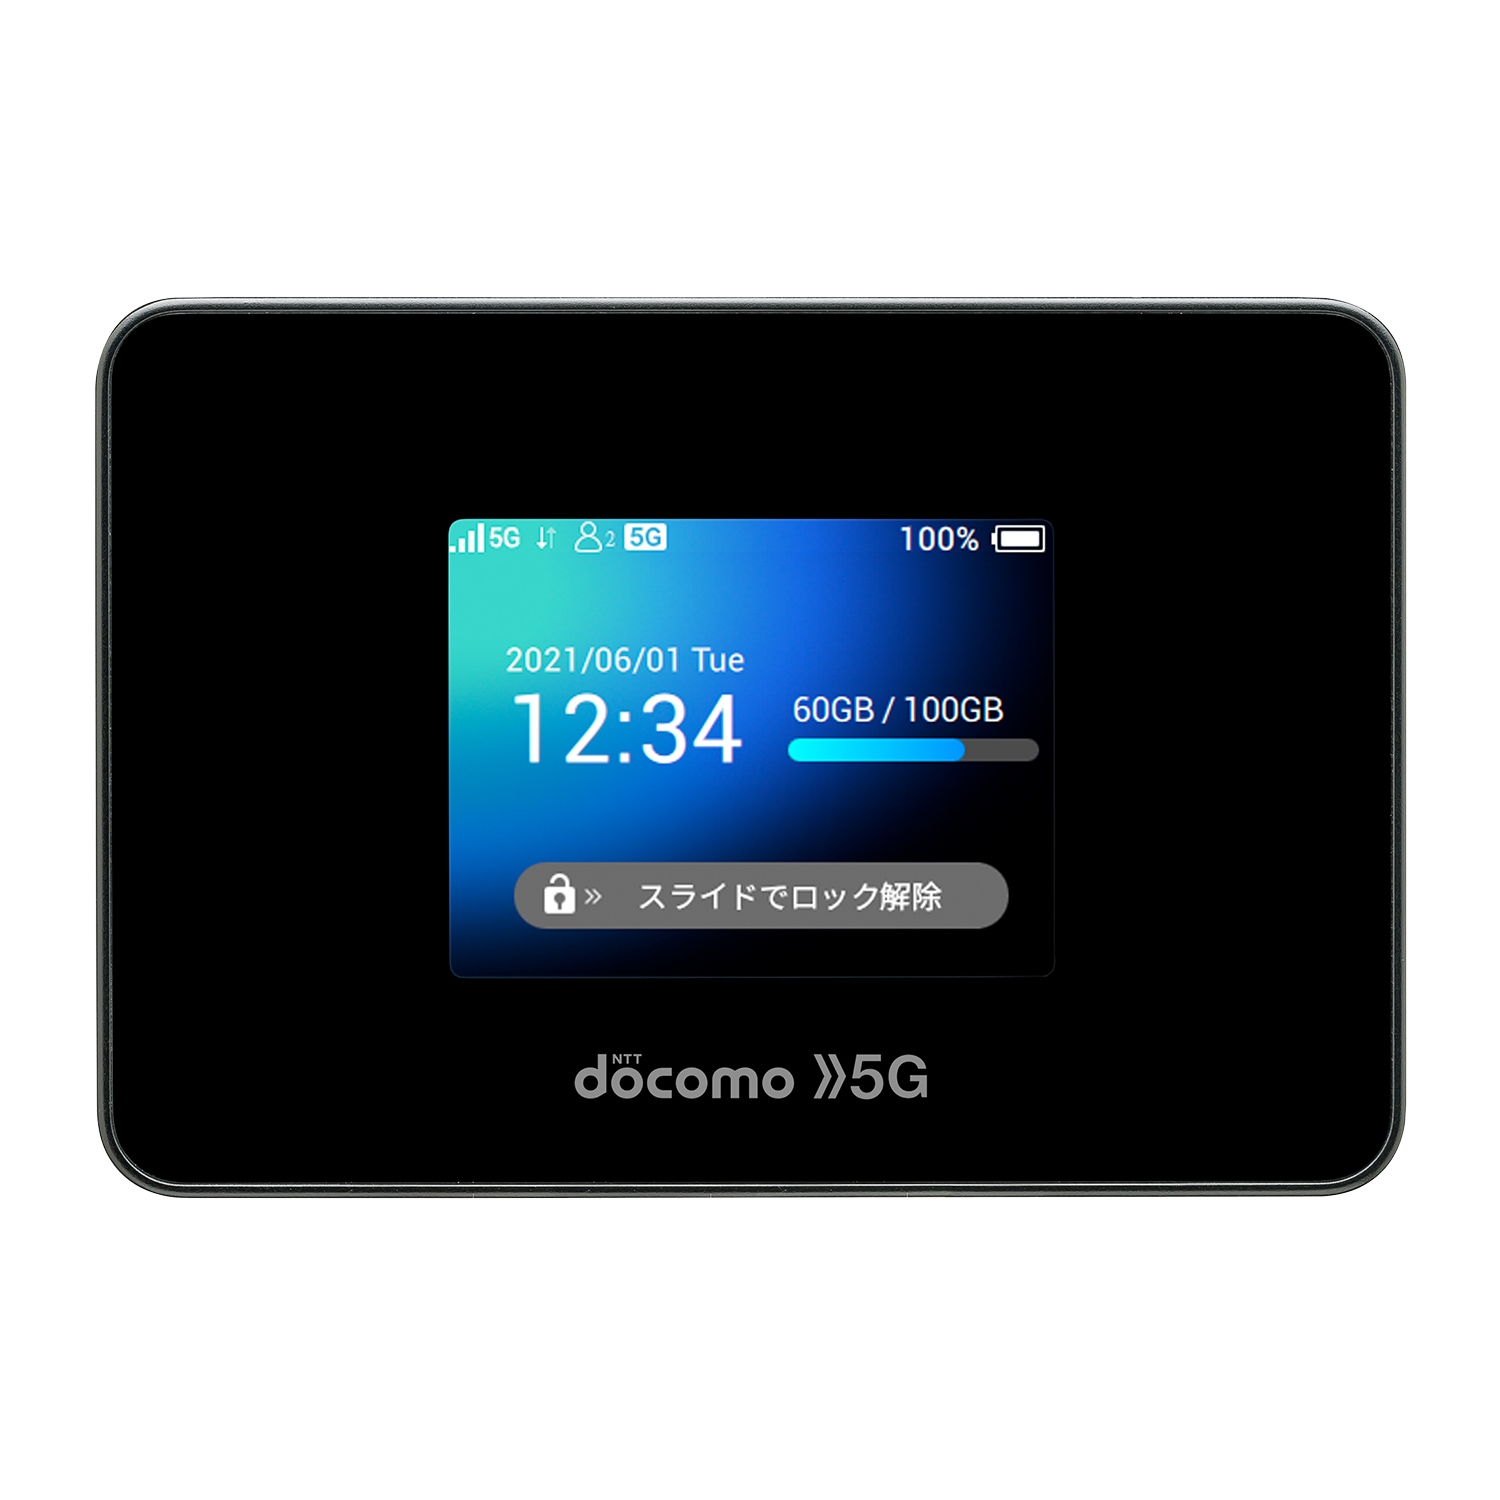 スマートフォン/携帯電話 その他 NTTドコモが、5G SA対応のモバイルルーター「Wi-Fi STATION SH54C 